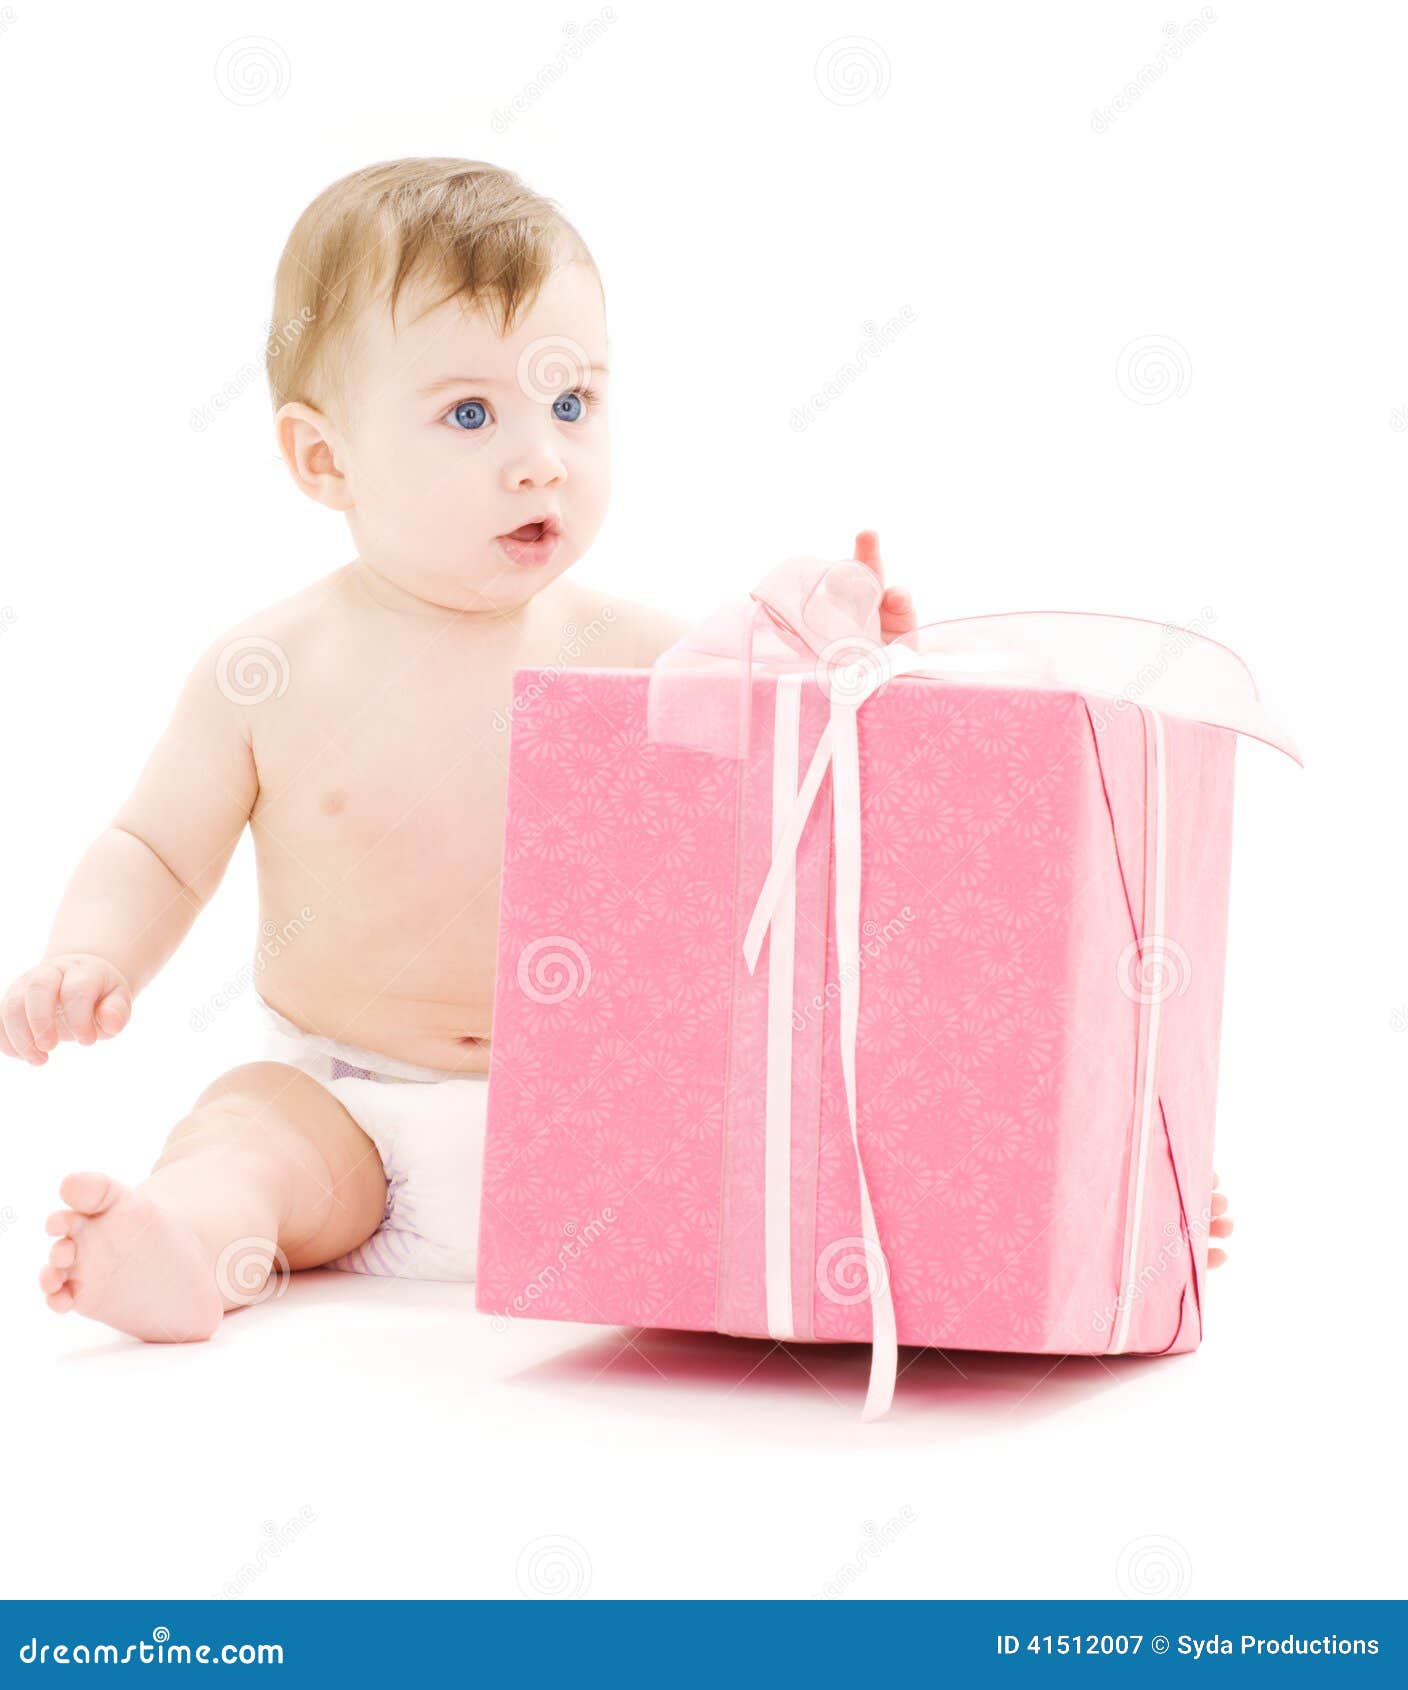 Мальчик в коробке 2009. Мальчик в коробке. Подарок для новорожденного в коробке. Мальчик из коробки. Мальчик в коробке фото.